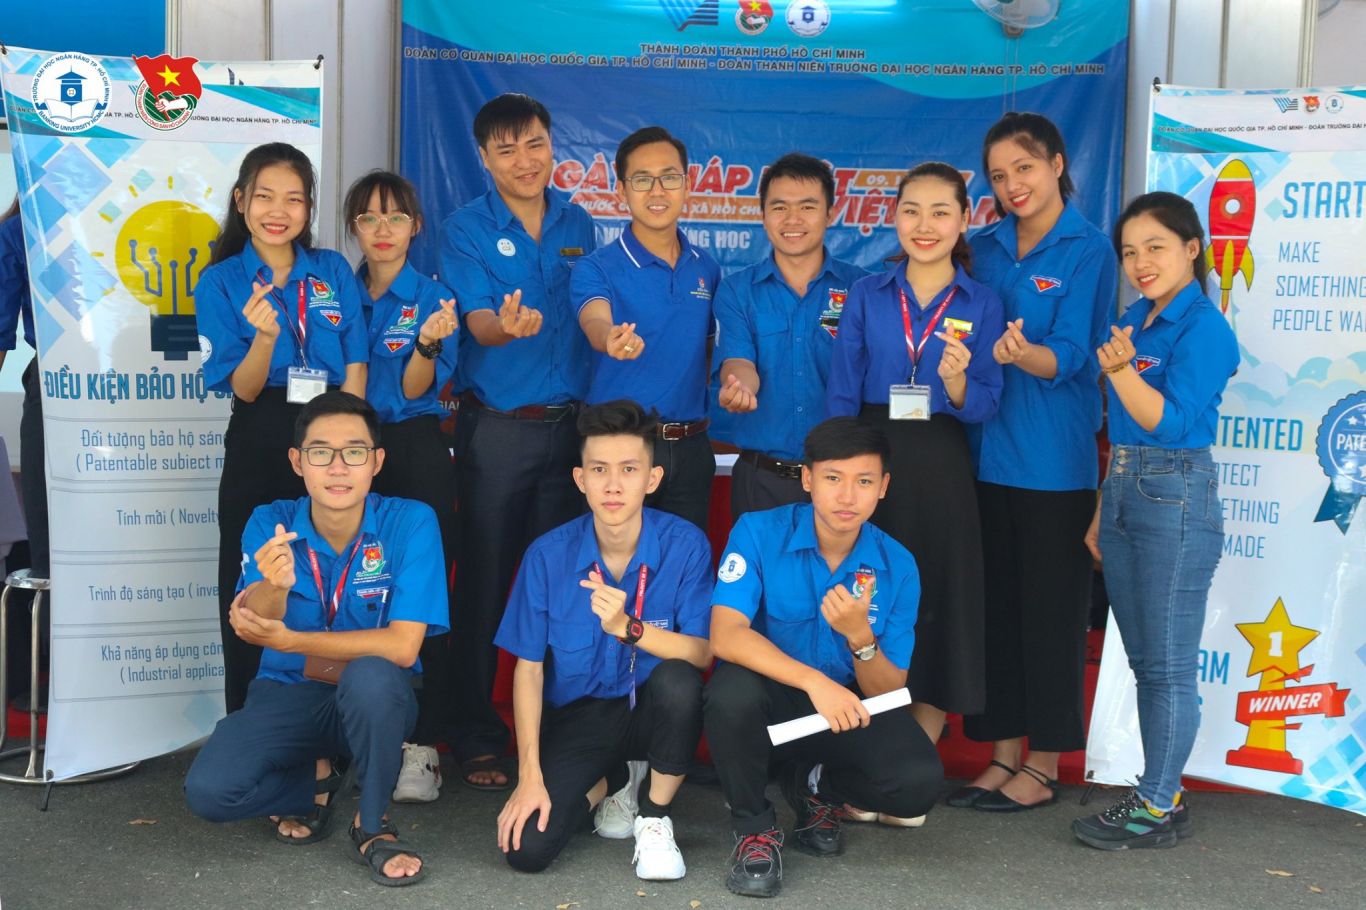 Xin gửi lời chúc mừng sự thành công của Ngày hội Pháp luật nước Cộng hoà Xã hội Chủ nghĩa Việt Nam năm 2020. Hy vọng sự hợp tác của Ban Cán sự Đoàn ĐHQG-HCM và Đoàn Trường Đại học Ngân hàng TP. HCM đã mang lại cho các bạn một chuỗi ngày với nhiều trải nghiệm hay và bổ ích.